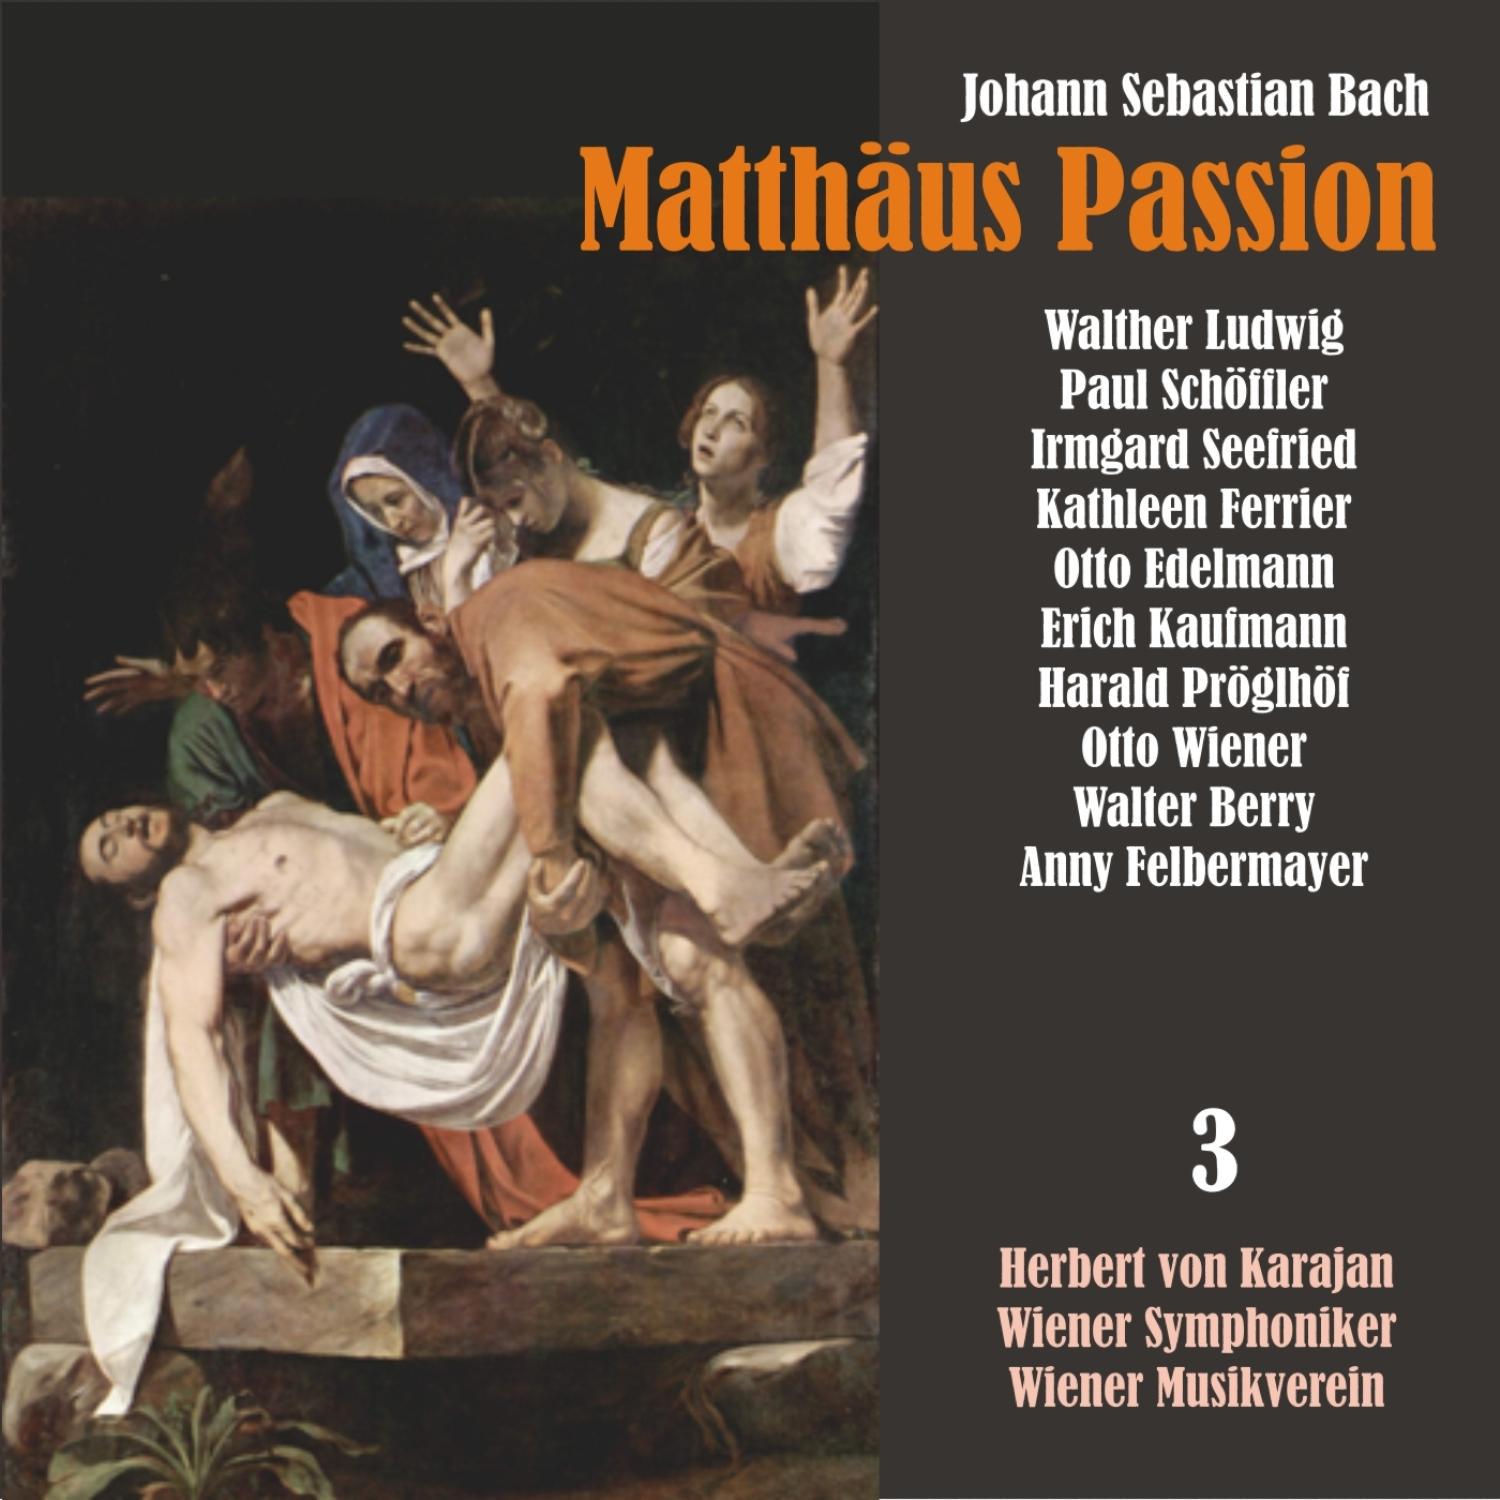 Matthäus Passion, BWV 244: "Komm, sufies Kreuz"